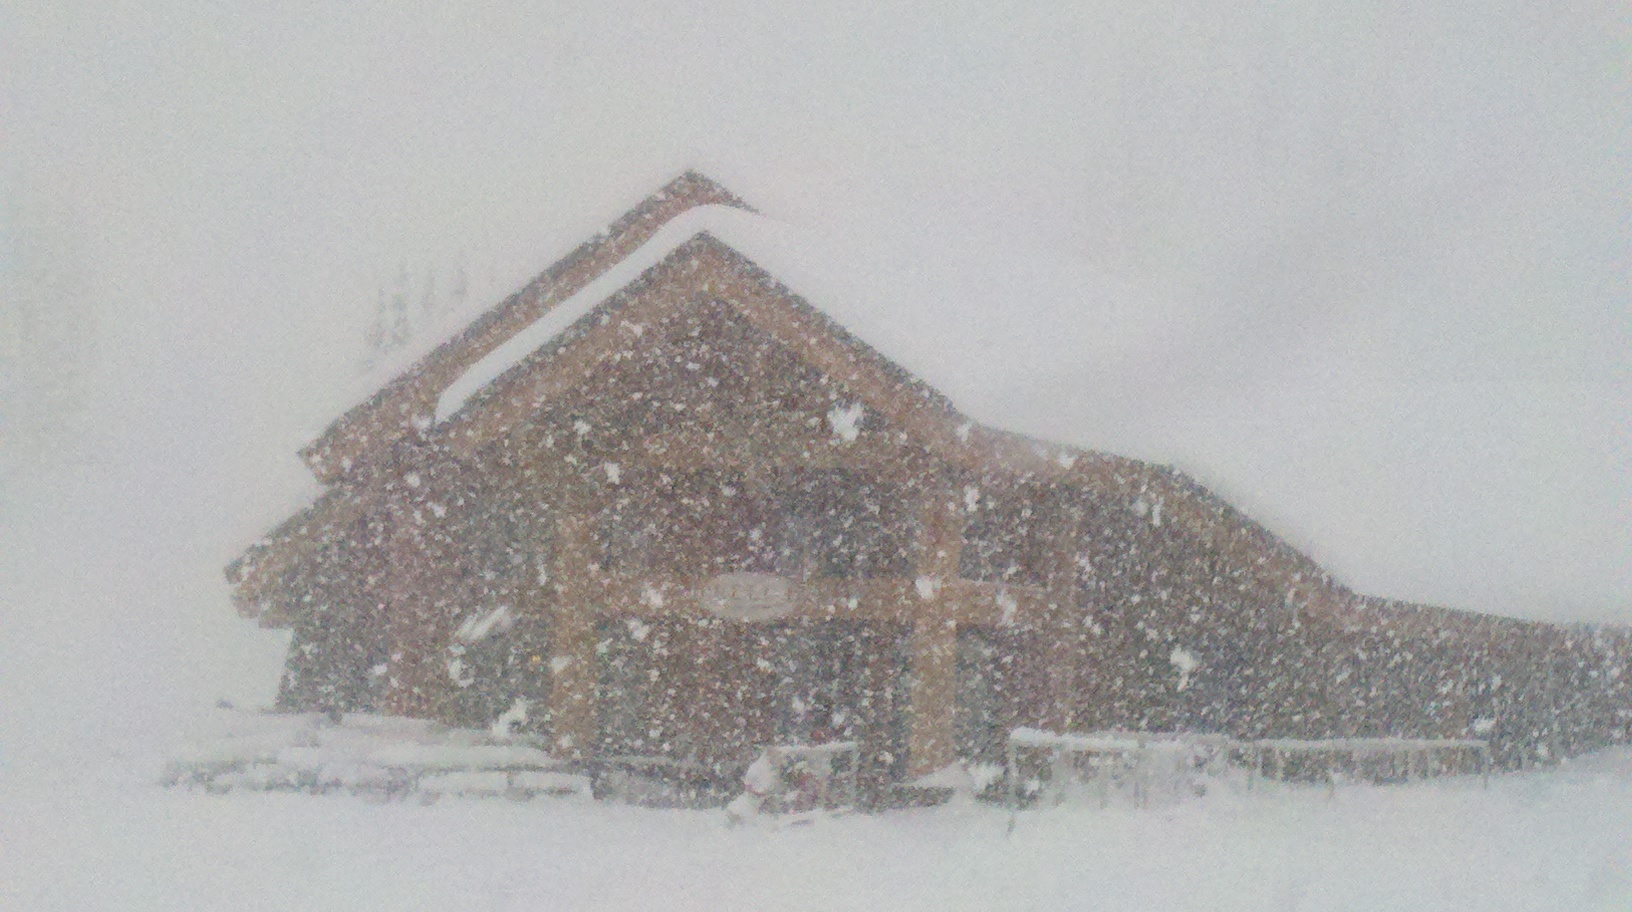 Stock image of nuking snow at Crystal Mountain, WA.  image:  kim kirchner